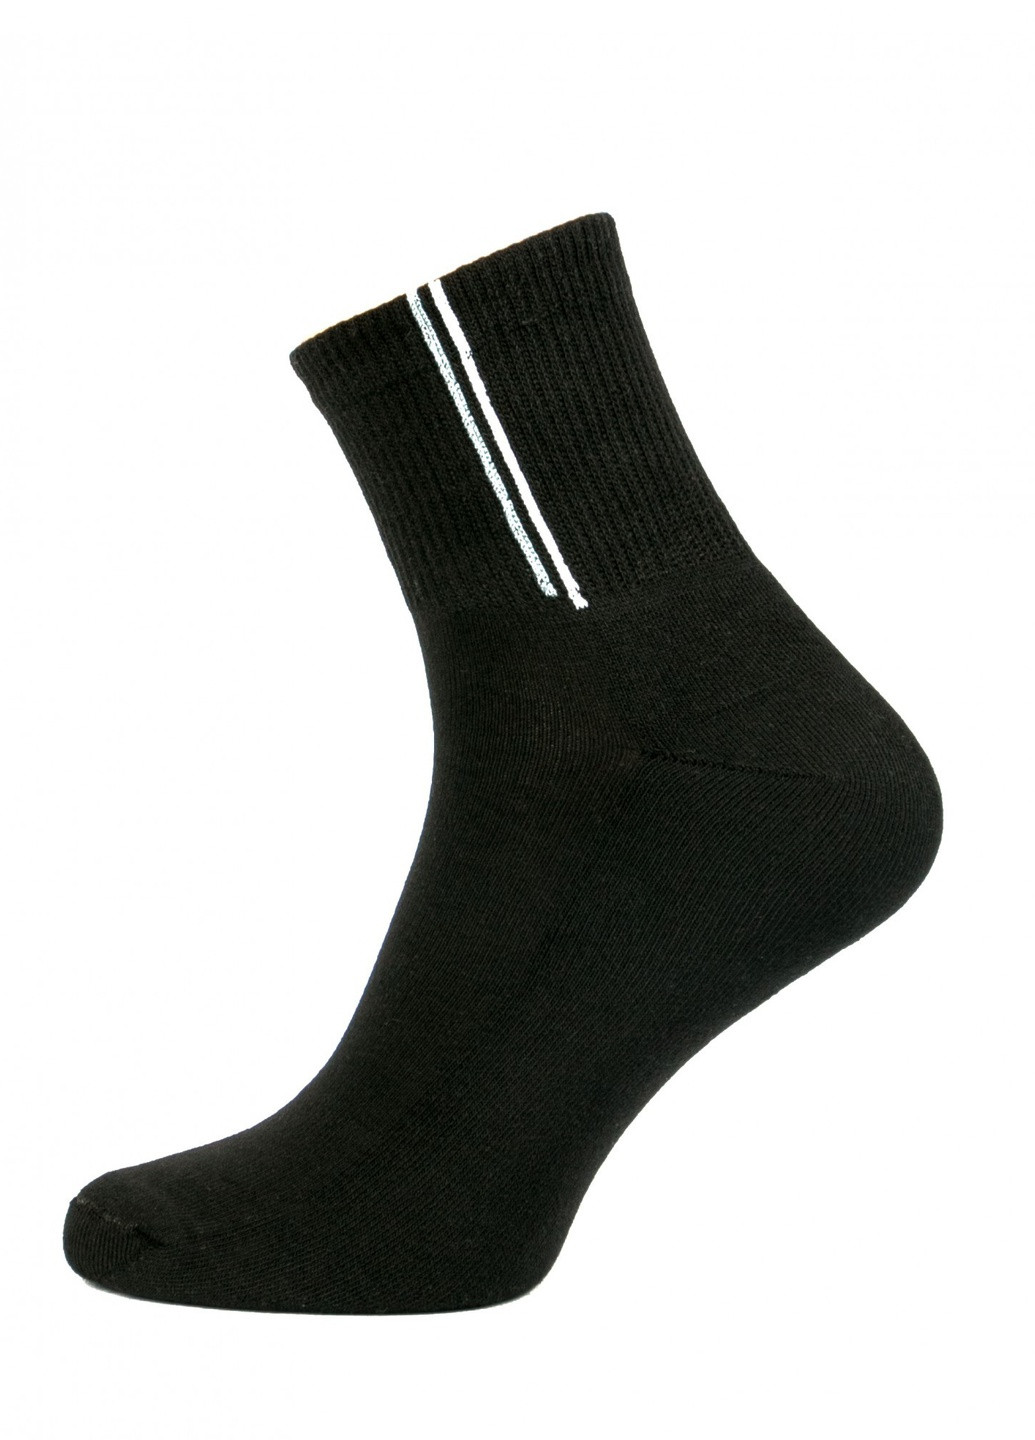 Шкарпетки чоловічі ТМ "Нова пара" махрова стопа спорт 414 НОВА ПАРА середня висота (257108324)